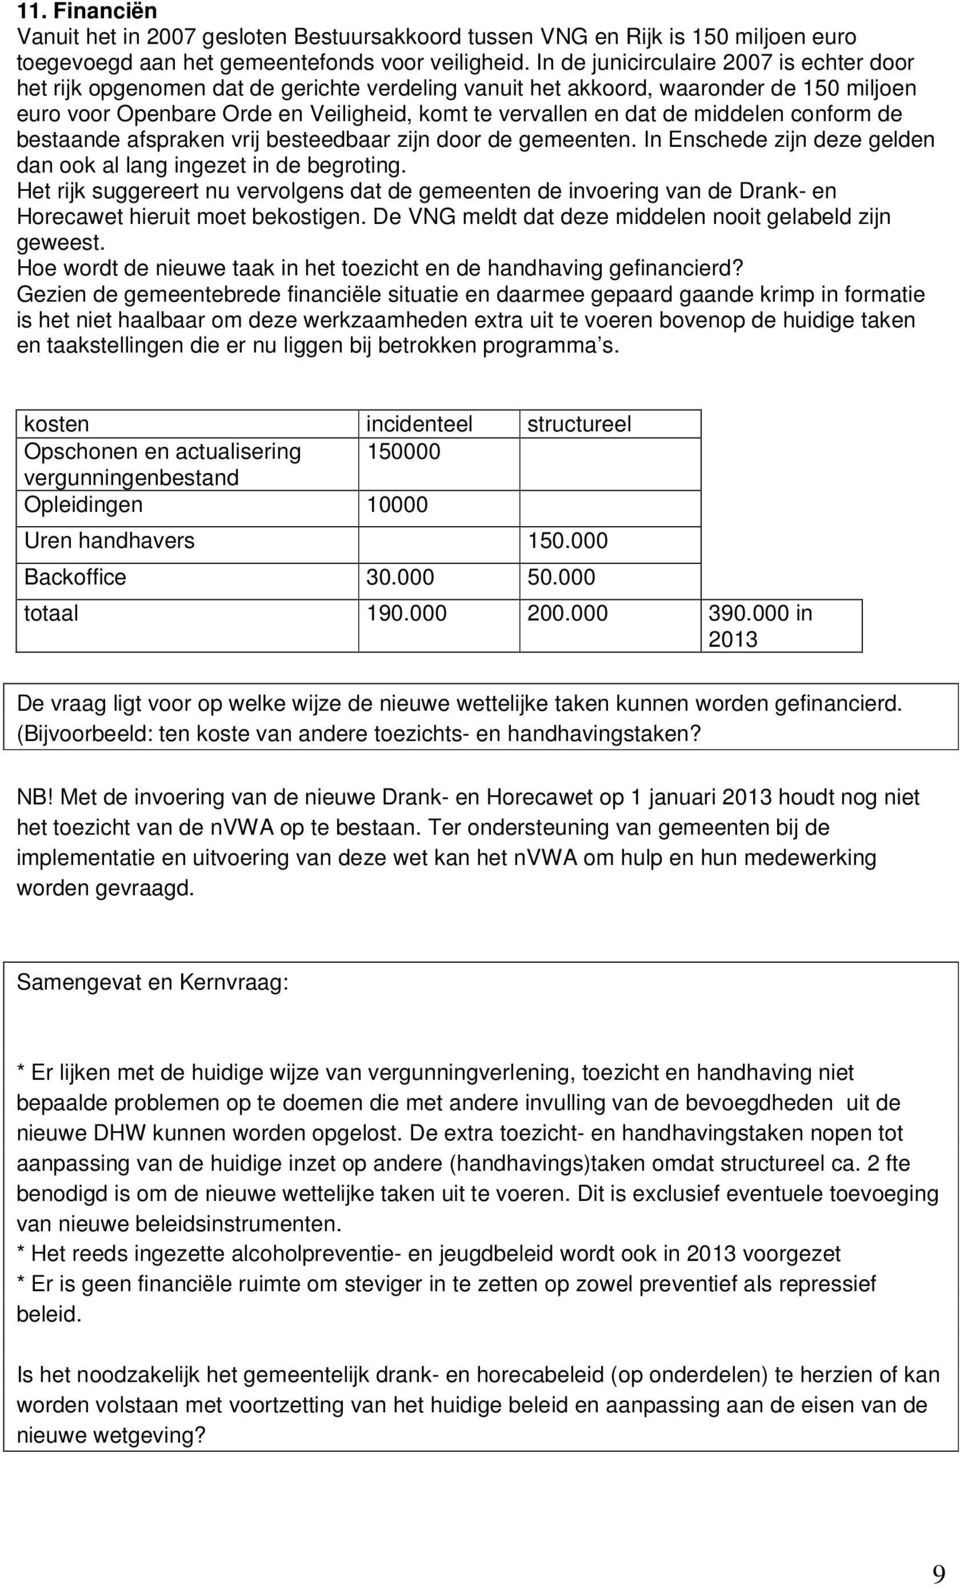 middelen conform de bestaande afspraken vrij besteedbaar zijn door de gemeenten. In Enschede zijn deze gelden dan ook al lang ingezet in de begroting.